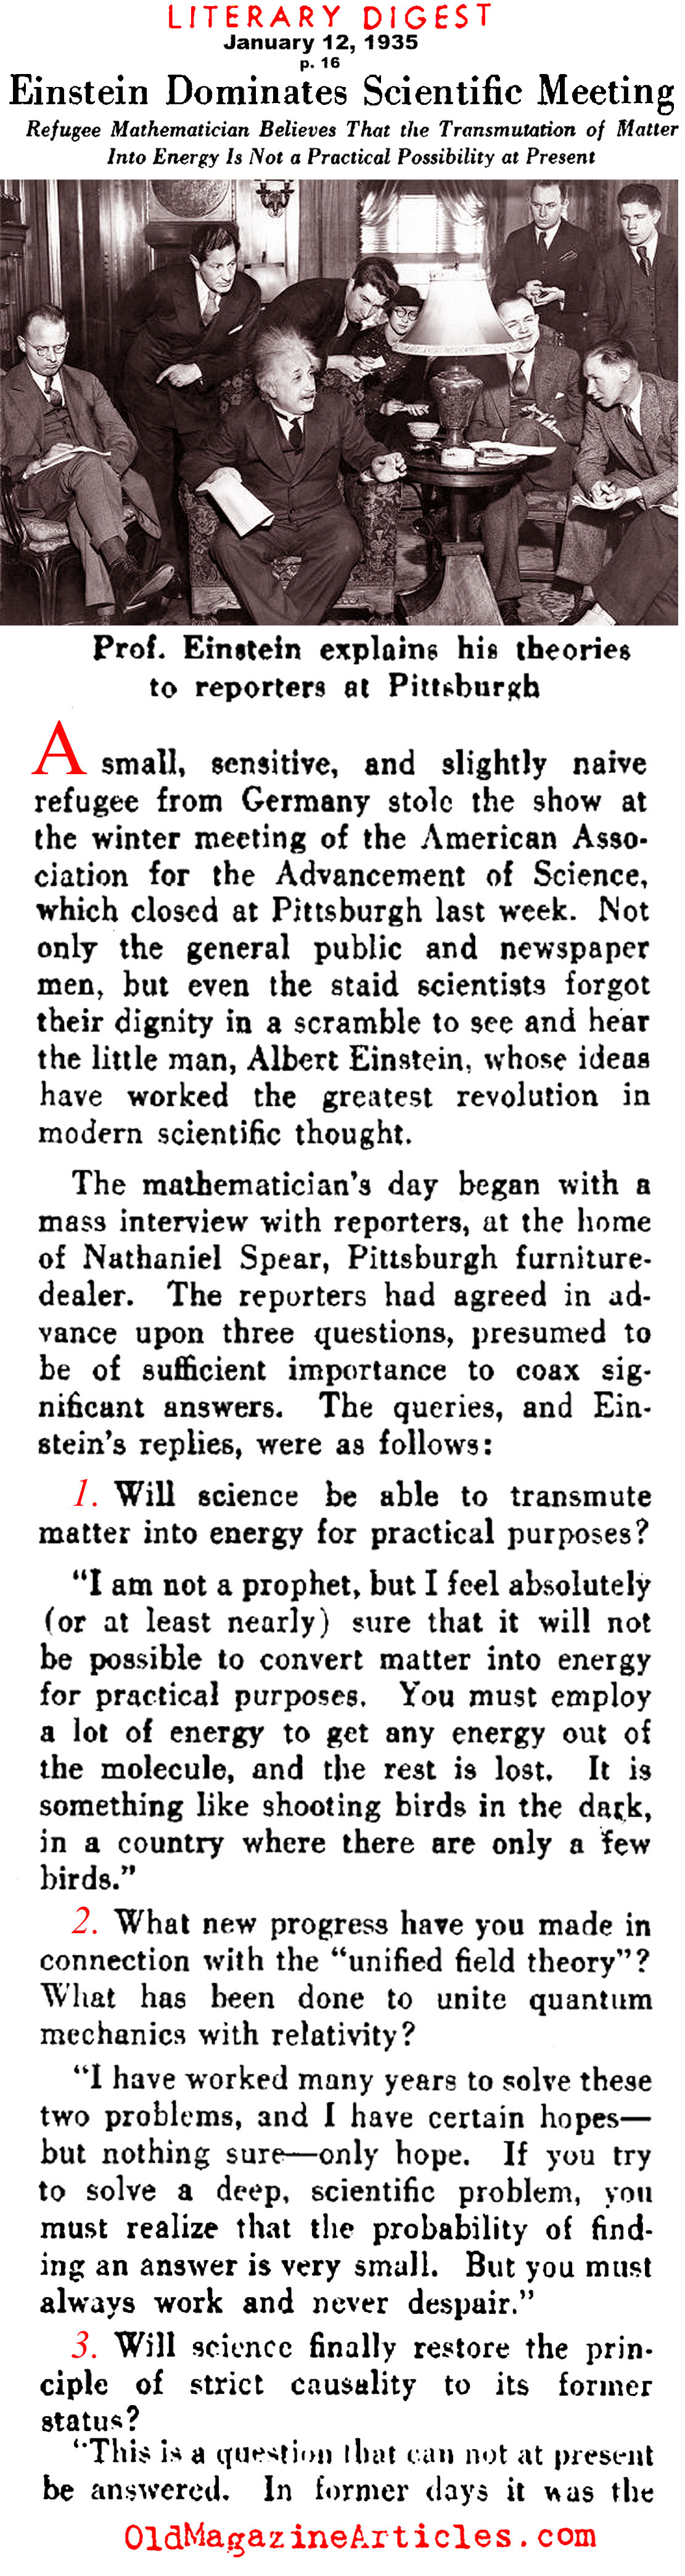  Albert Einstein Magazine Interview  (Literary Digest, 1935)